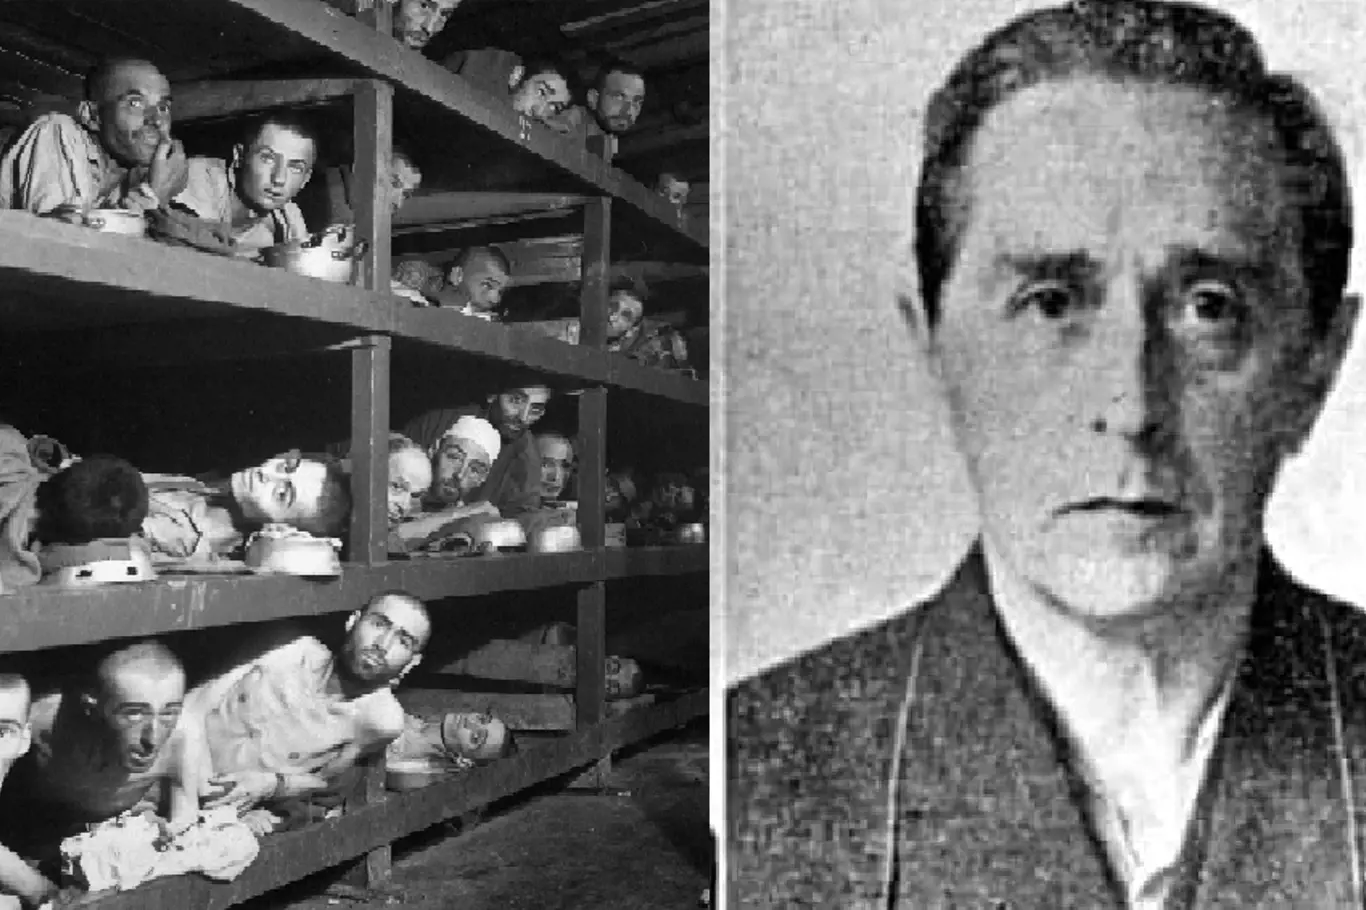 Nacistický dánský lékař Carl Peter Værnet prováděl experimenty na homosexuálních vězních v koncentračním táboře Buchenwald. Po válce před spravedlnosti unikl do Latinské Ameriky.